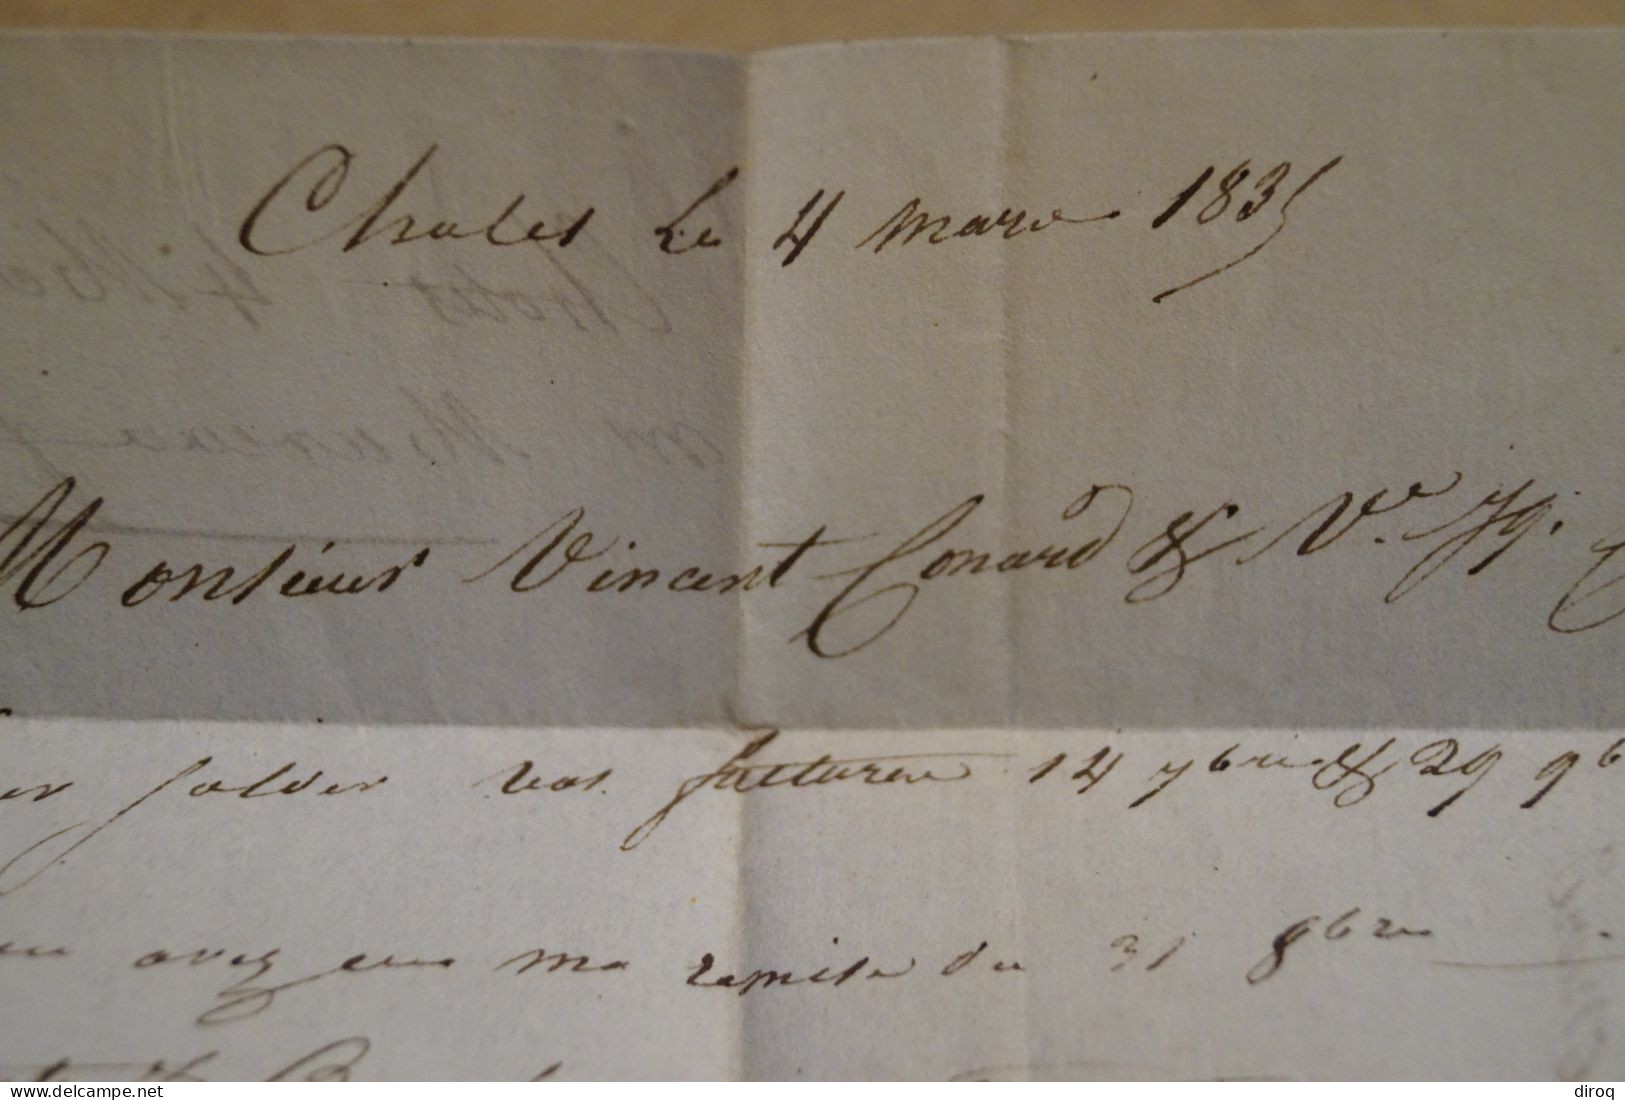 Envoi de Chollet ( 47 ),1835 à Drucourt,belle oblitération de Thiberville,griffé,bel état de collection